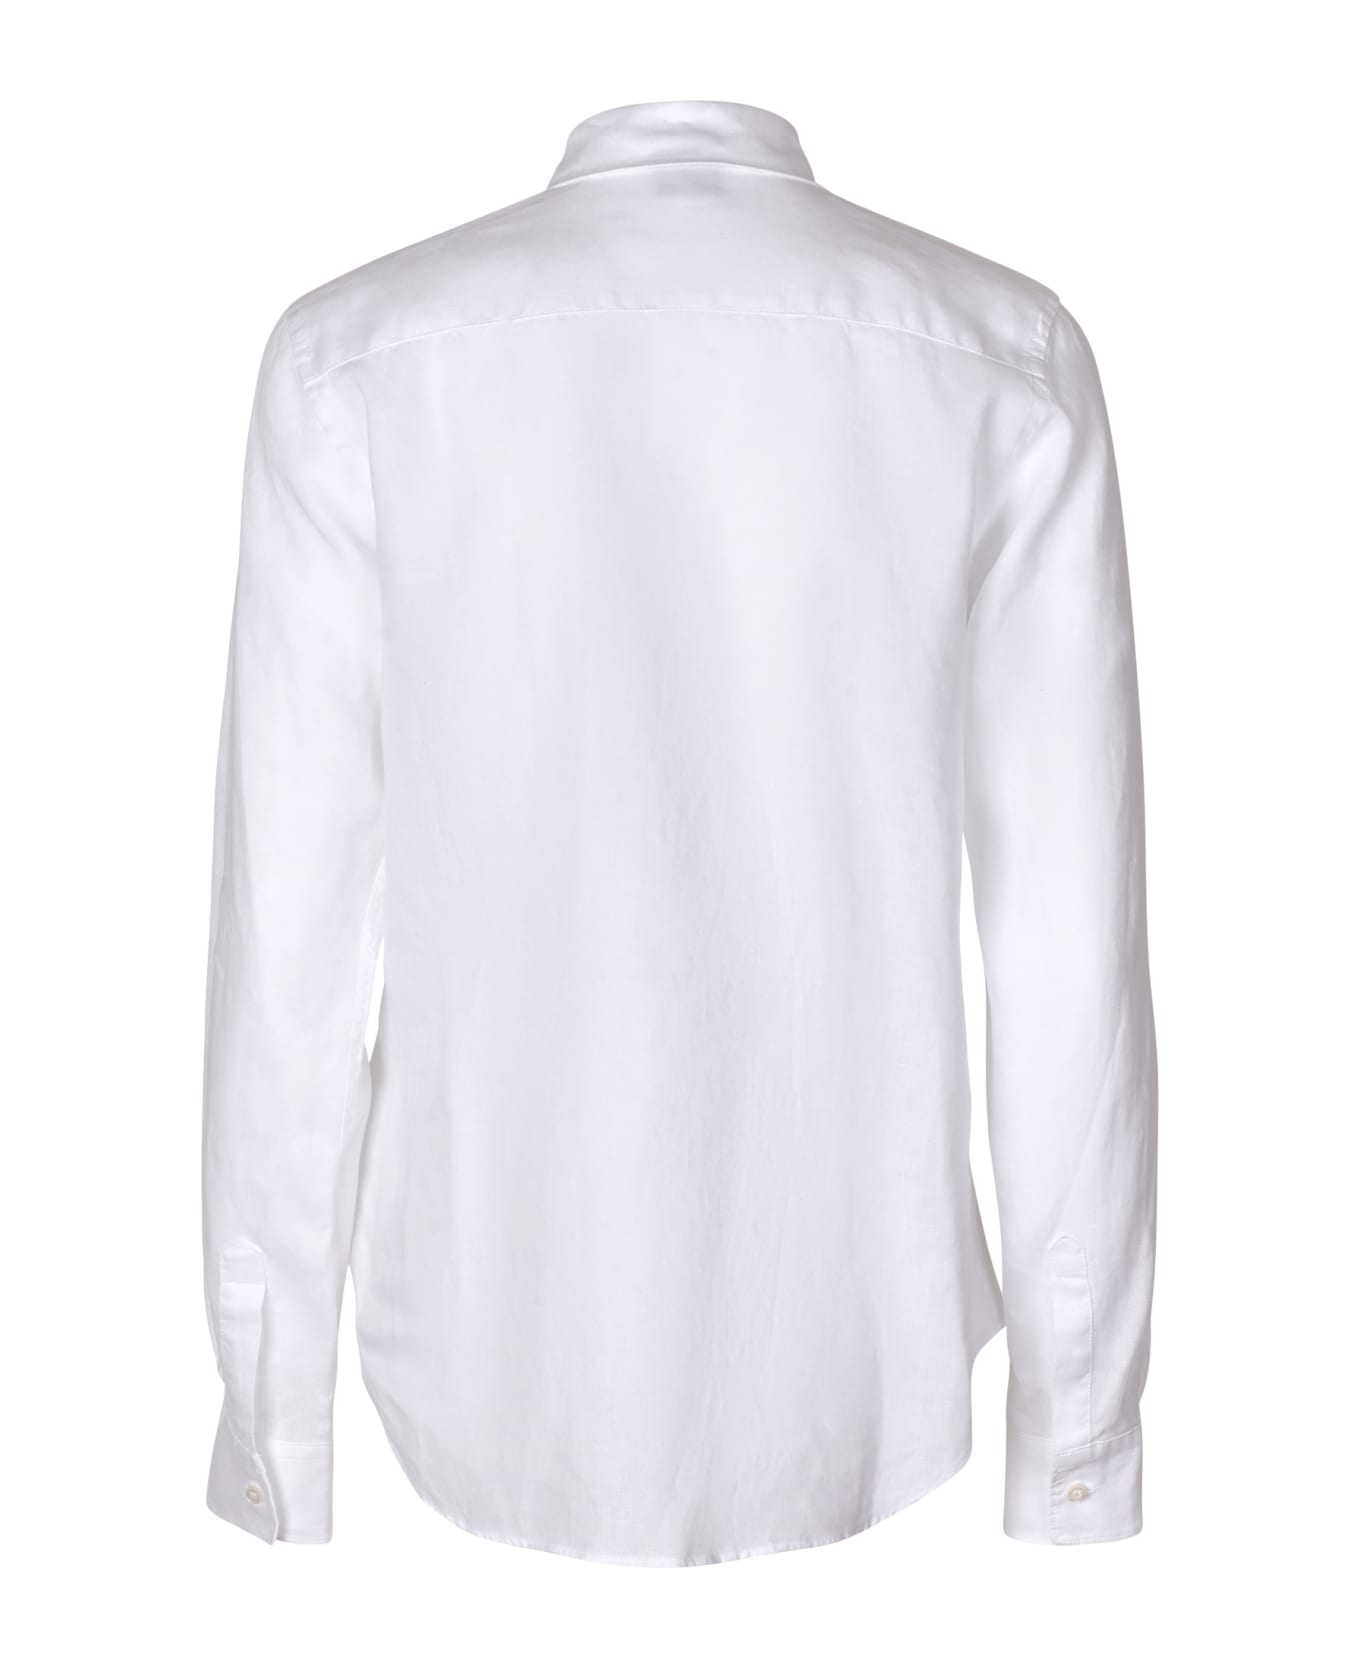 Aspesi White Long-sleeved Shirt - White